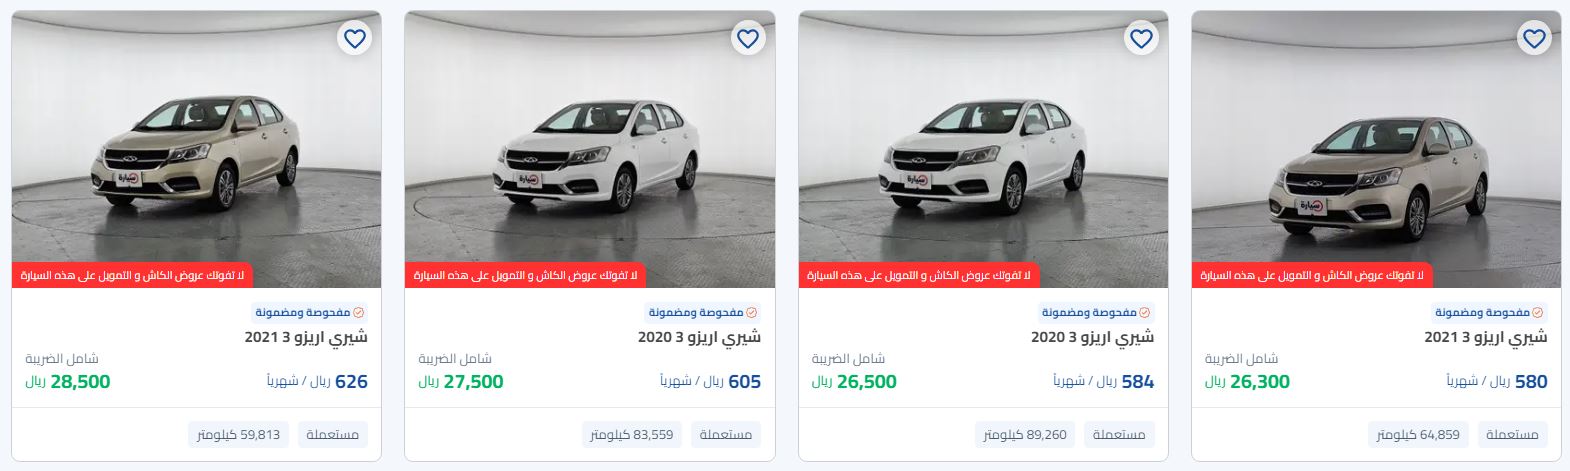 عروض رمضان 2024 سيارات من syarah